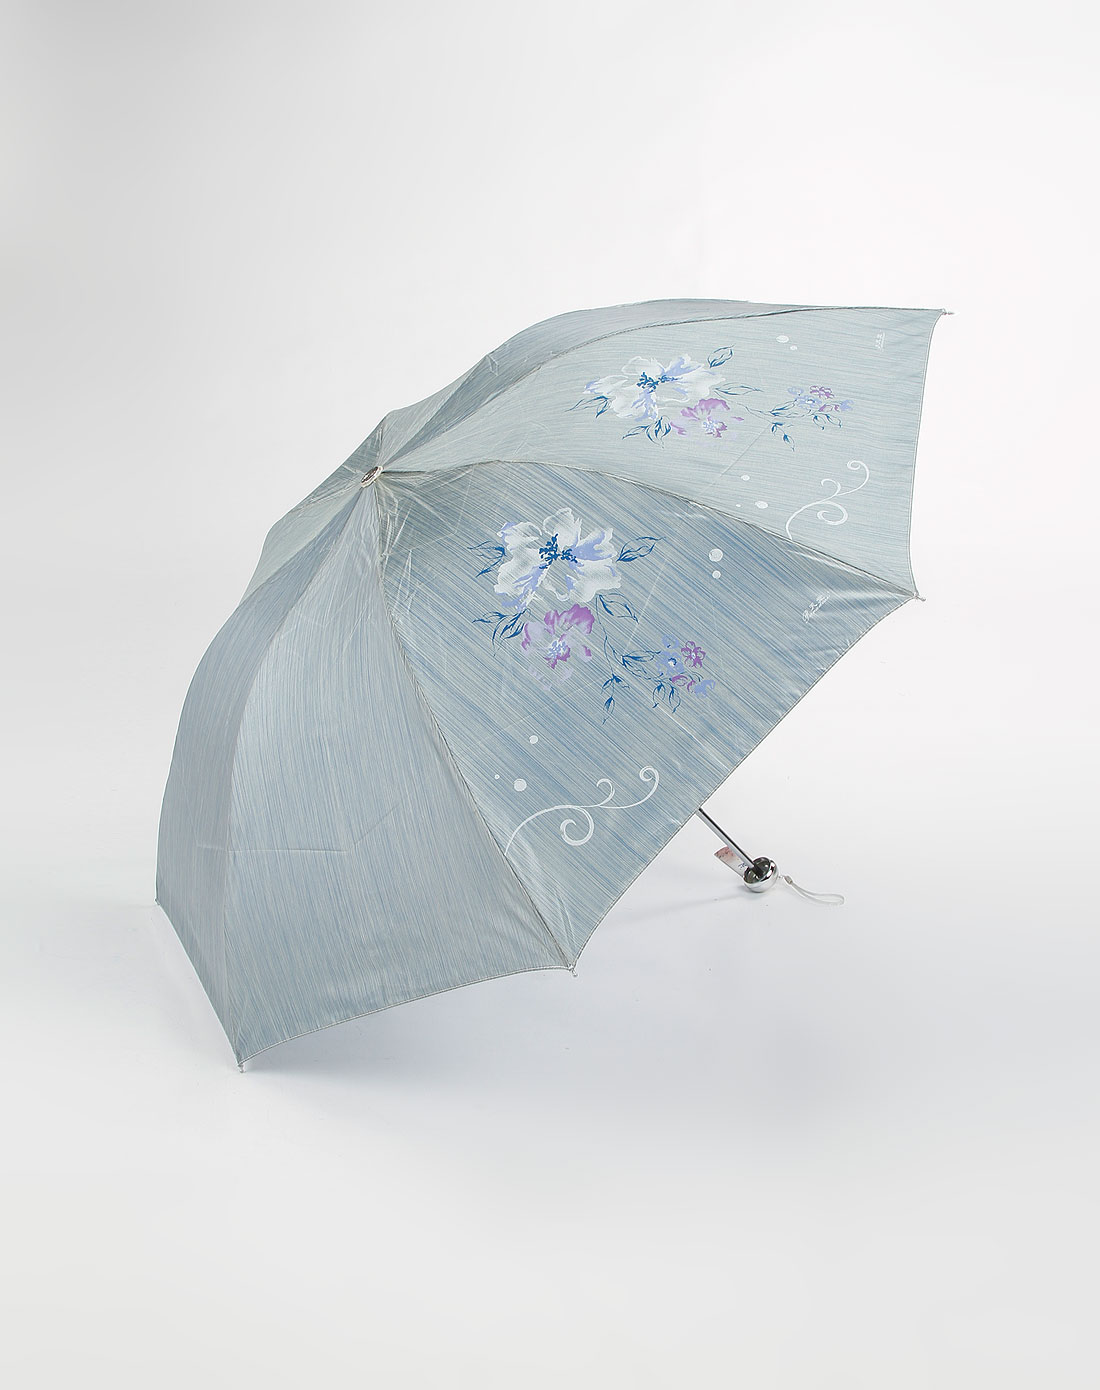 雨伞十大名牌中国图片